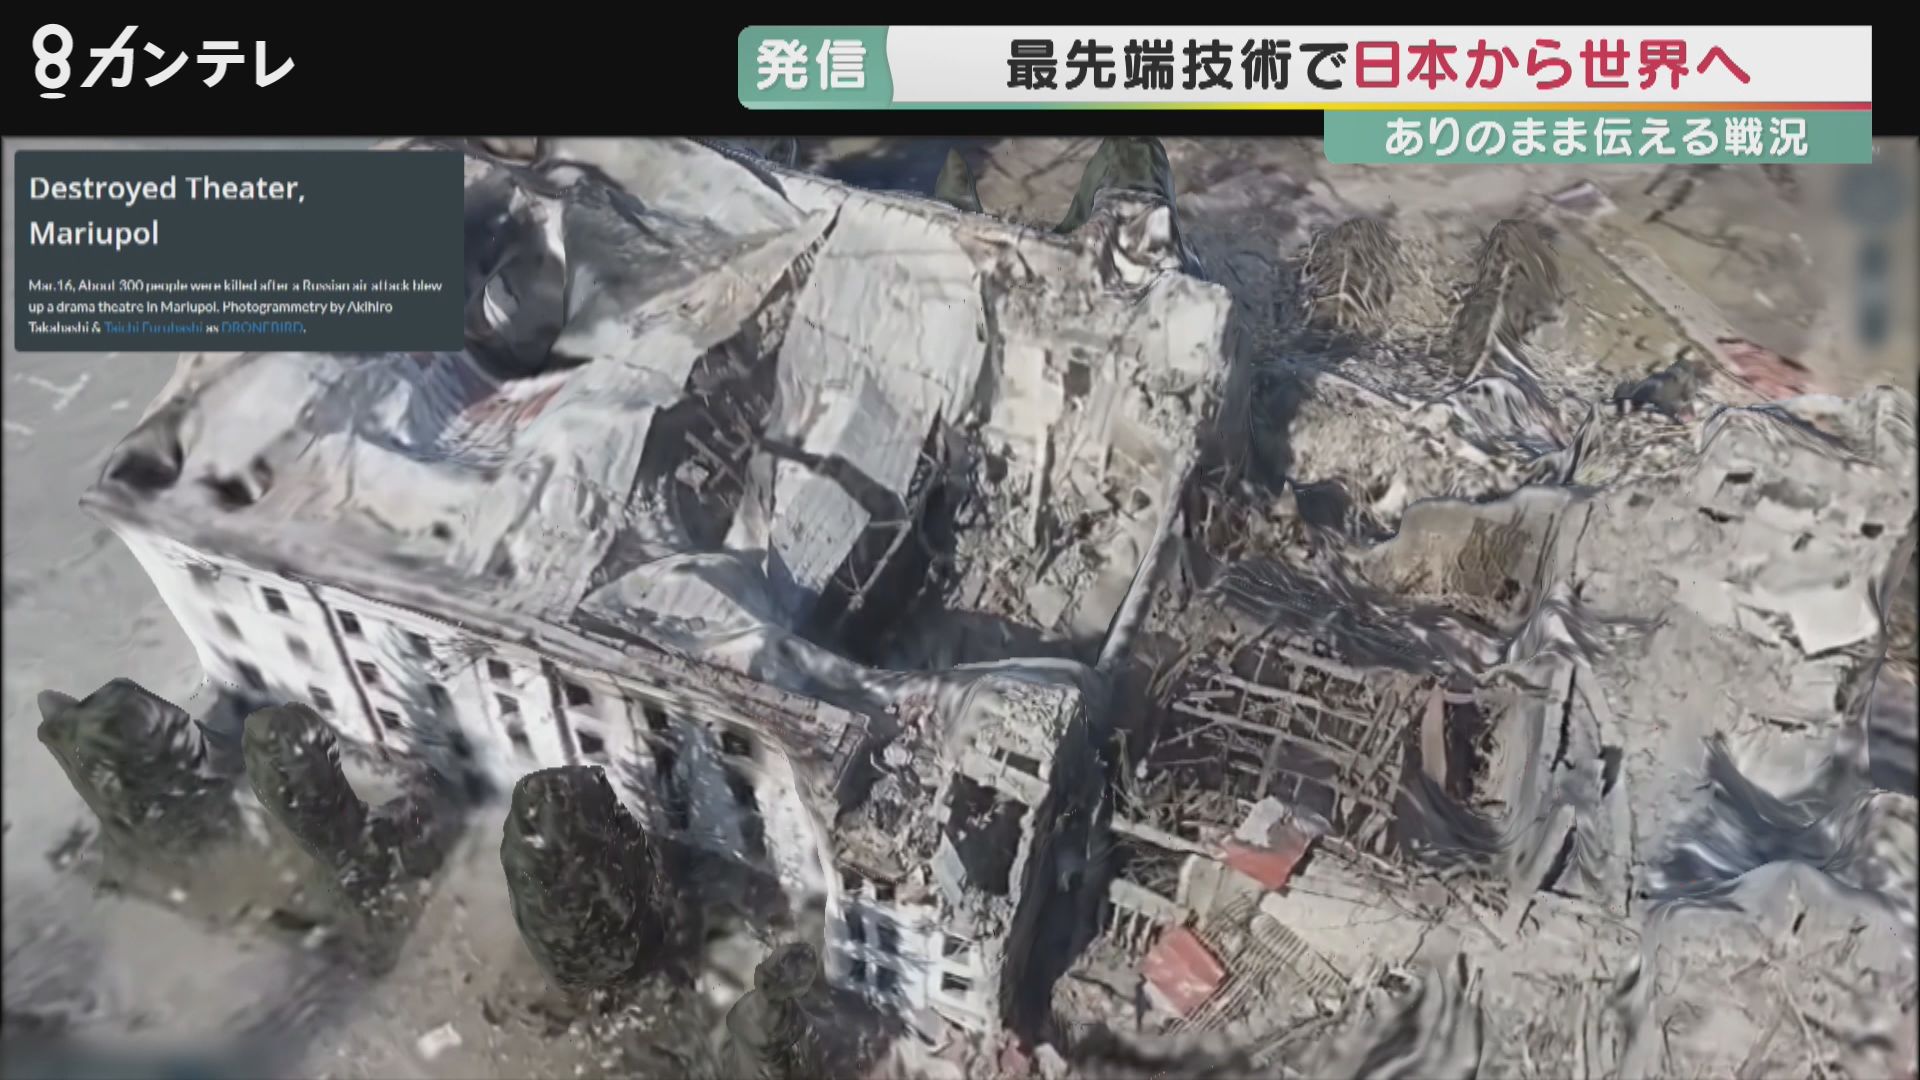 破壊された住宅　ミサイルが直撃したバス…ウクライナの被害を日本から世界へ発信　写真や映像を3Dで立体化